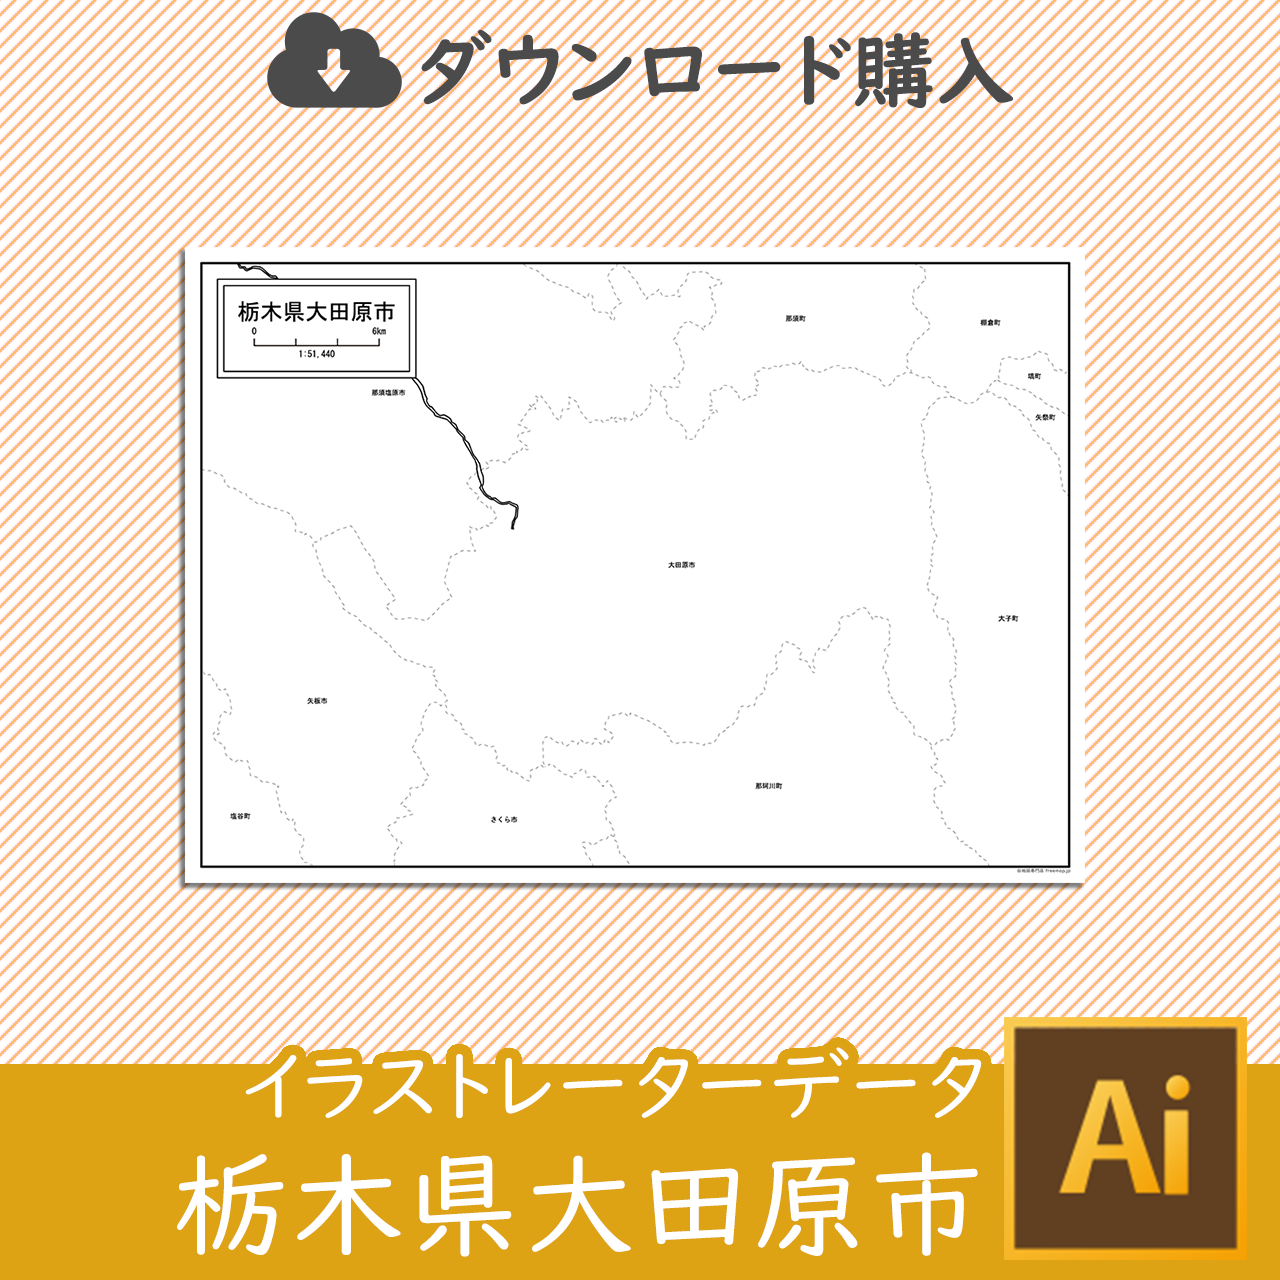 大田原市の白地図のサムネイル